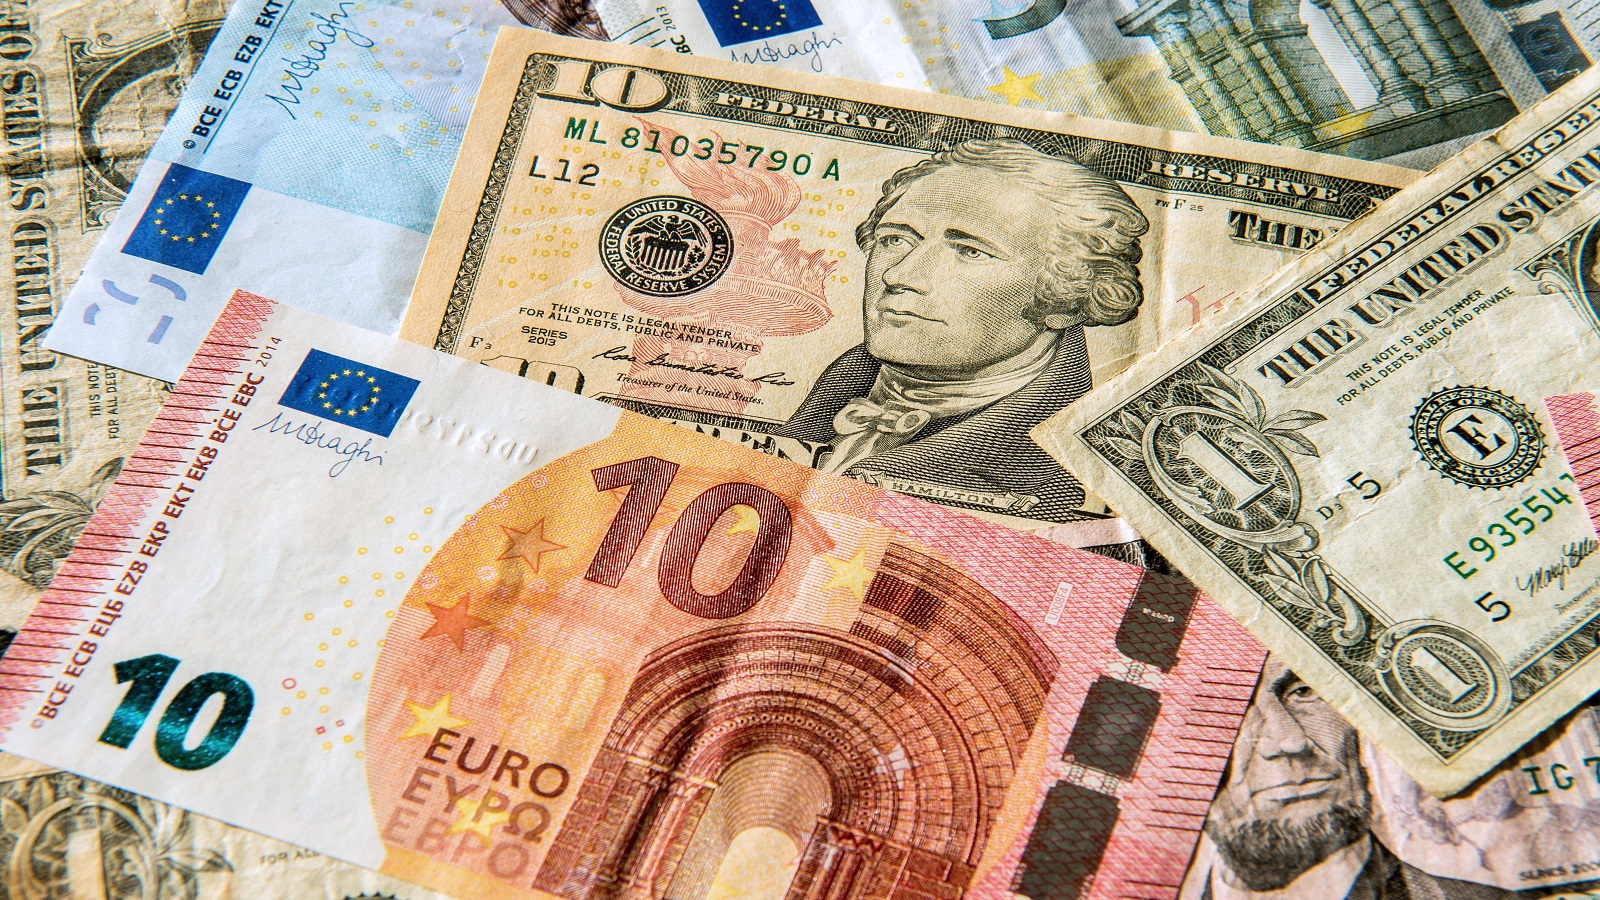 بين قوة الدولار وضعفه الذاتي.. اليورو إلى أين؟